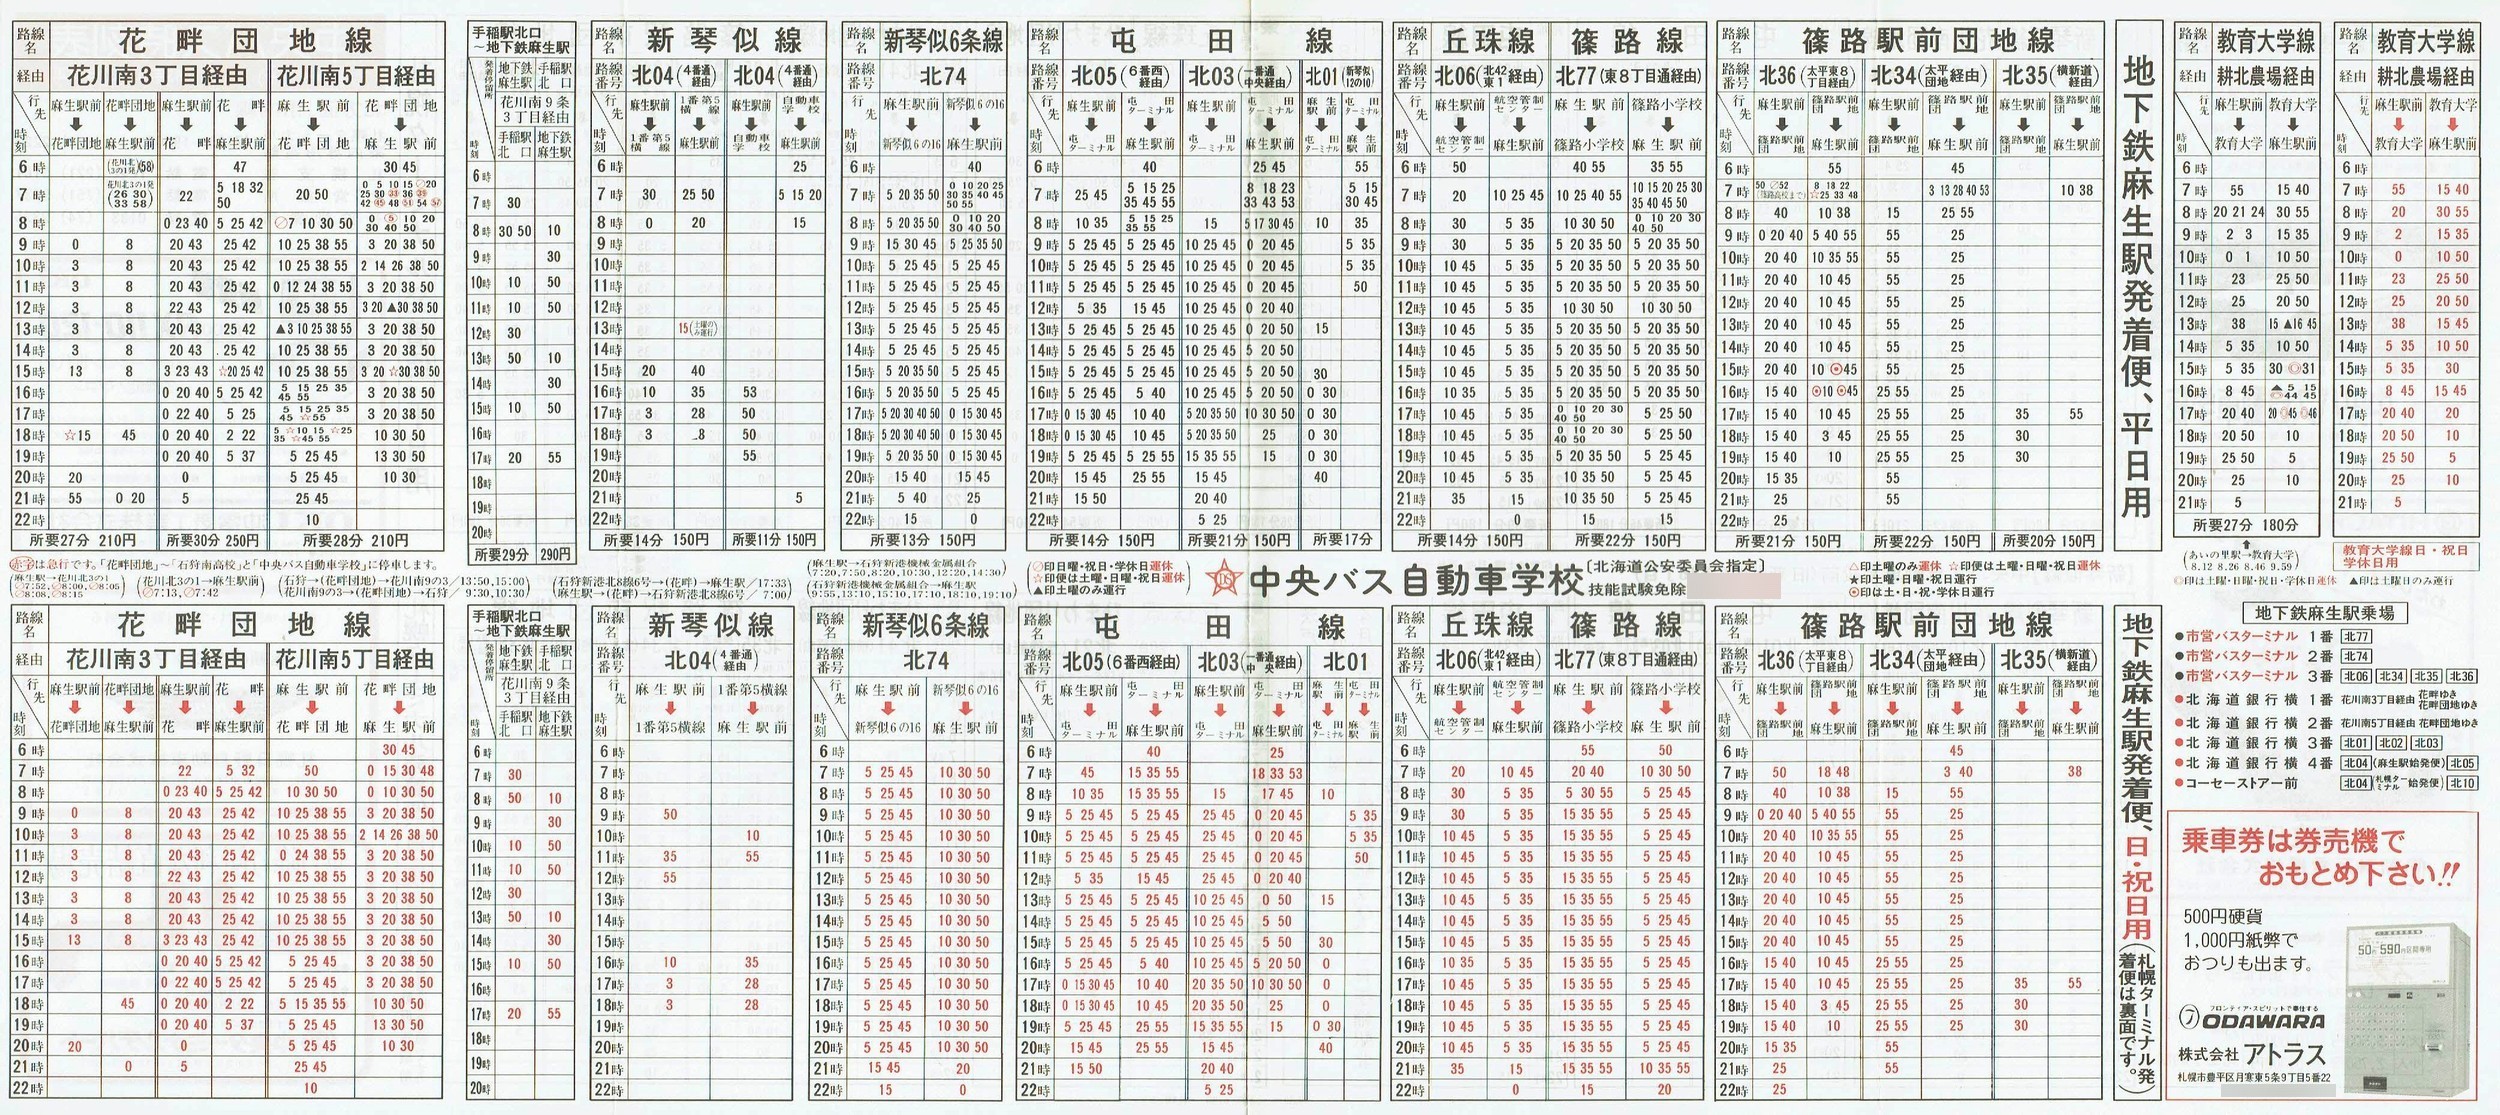 1988-03-31改正_北海道中央バス(札幌)_札幌市内線北方面時刻表裏面